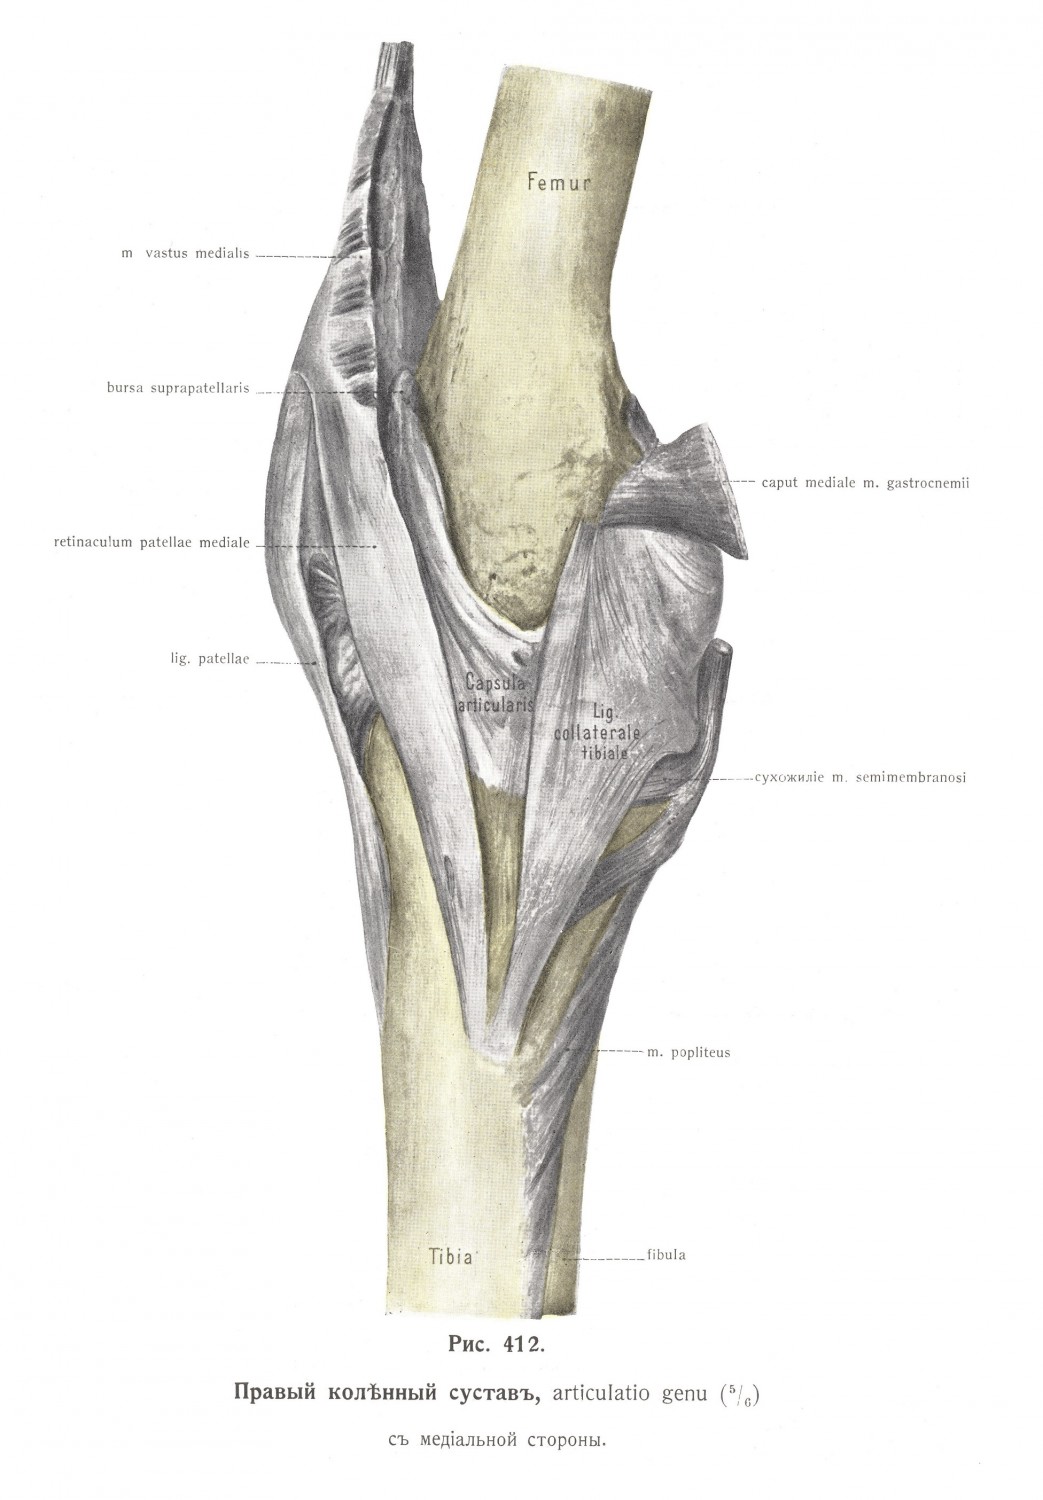 Правый коленный сустав, articulatio genu, медиальная сторона